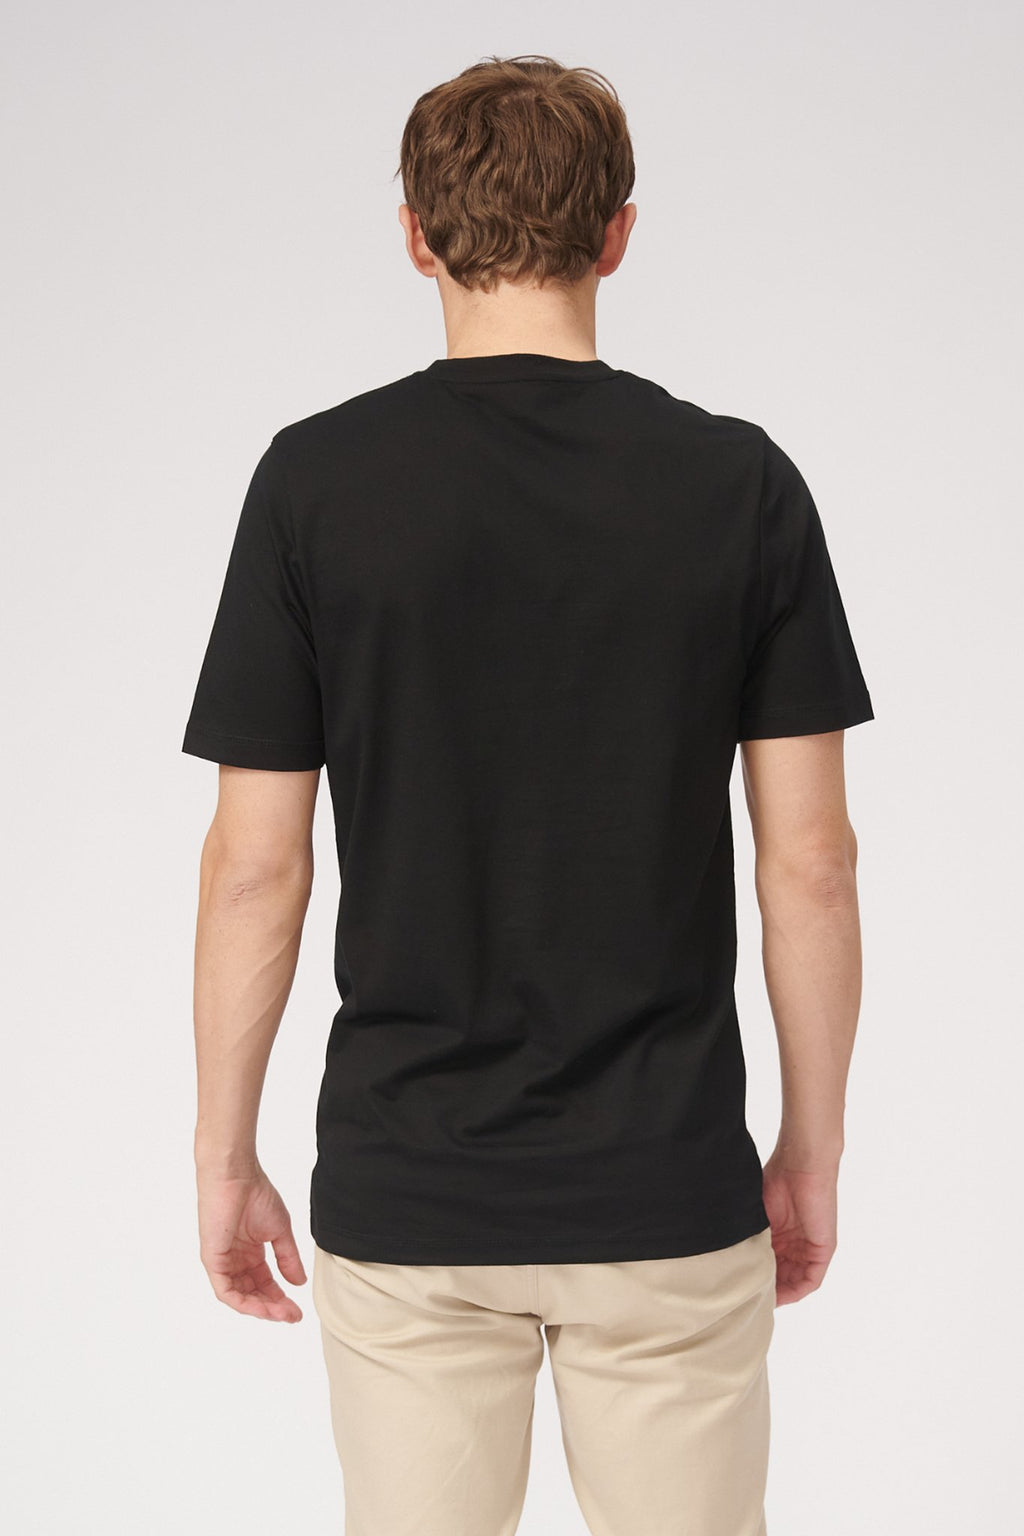 Basic Vneck t -shirt - zwart